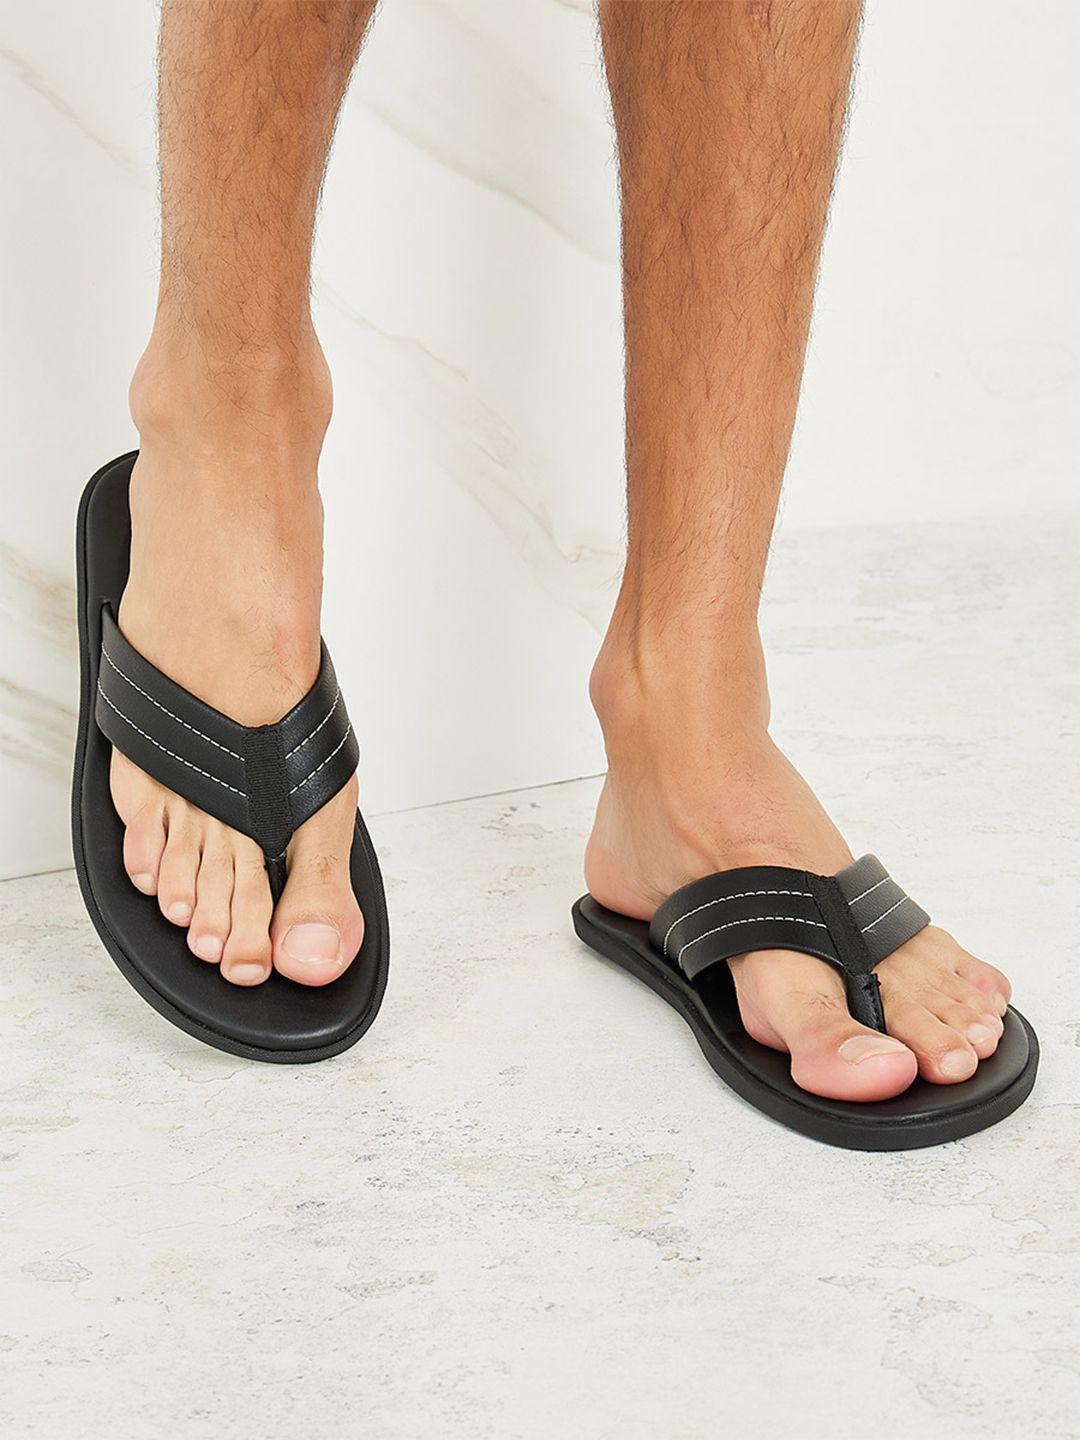 styli-men-black-open-toe-thong-flip-flops